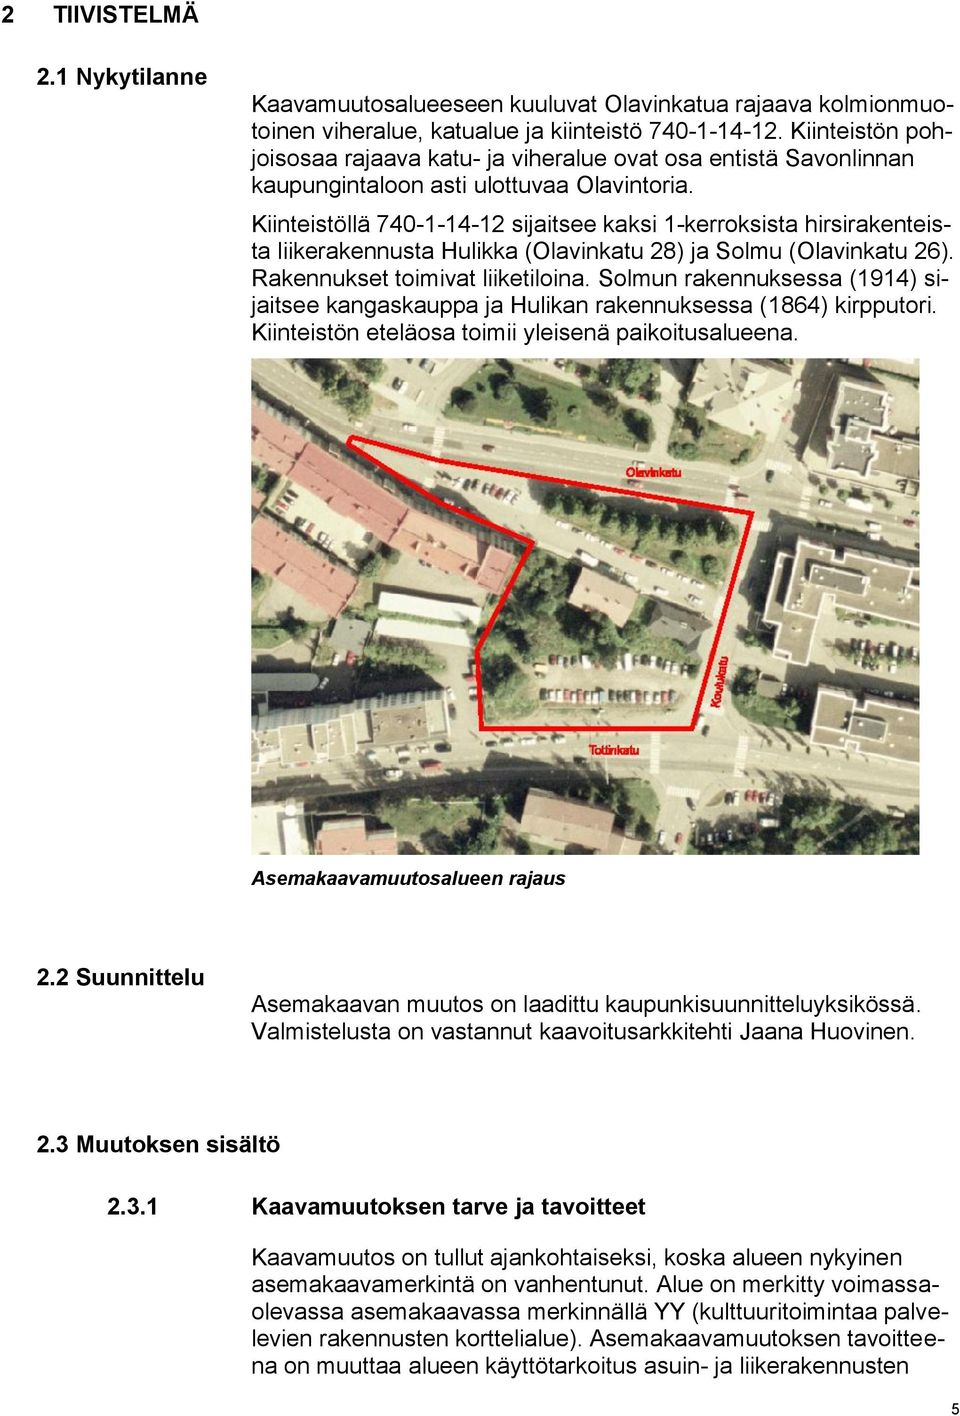 Kiinteistöllä 740-1-14-12 sijaitsee kaksi 1-kerroksista hirsirakenteista liikerakennusta Hulikka (Olavinkatu 28) ja Solmu (Olavinkatu 26). Rakennukset toimivat liiketiloina.